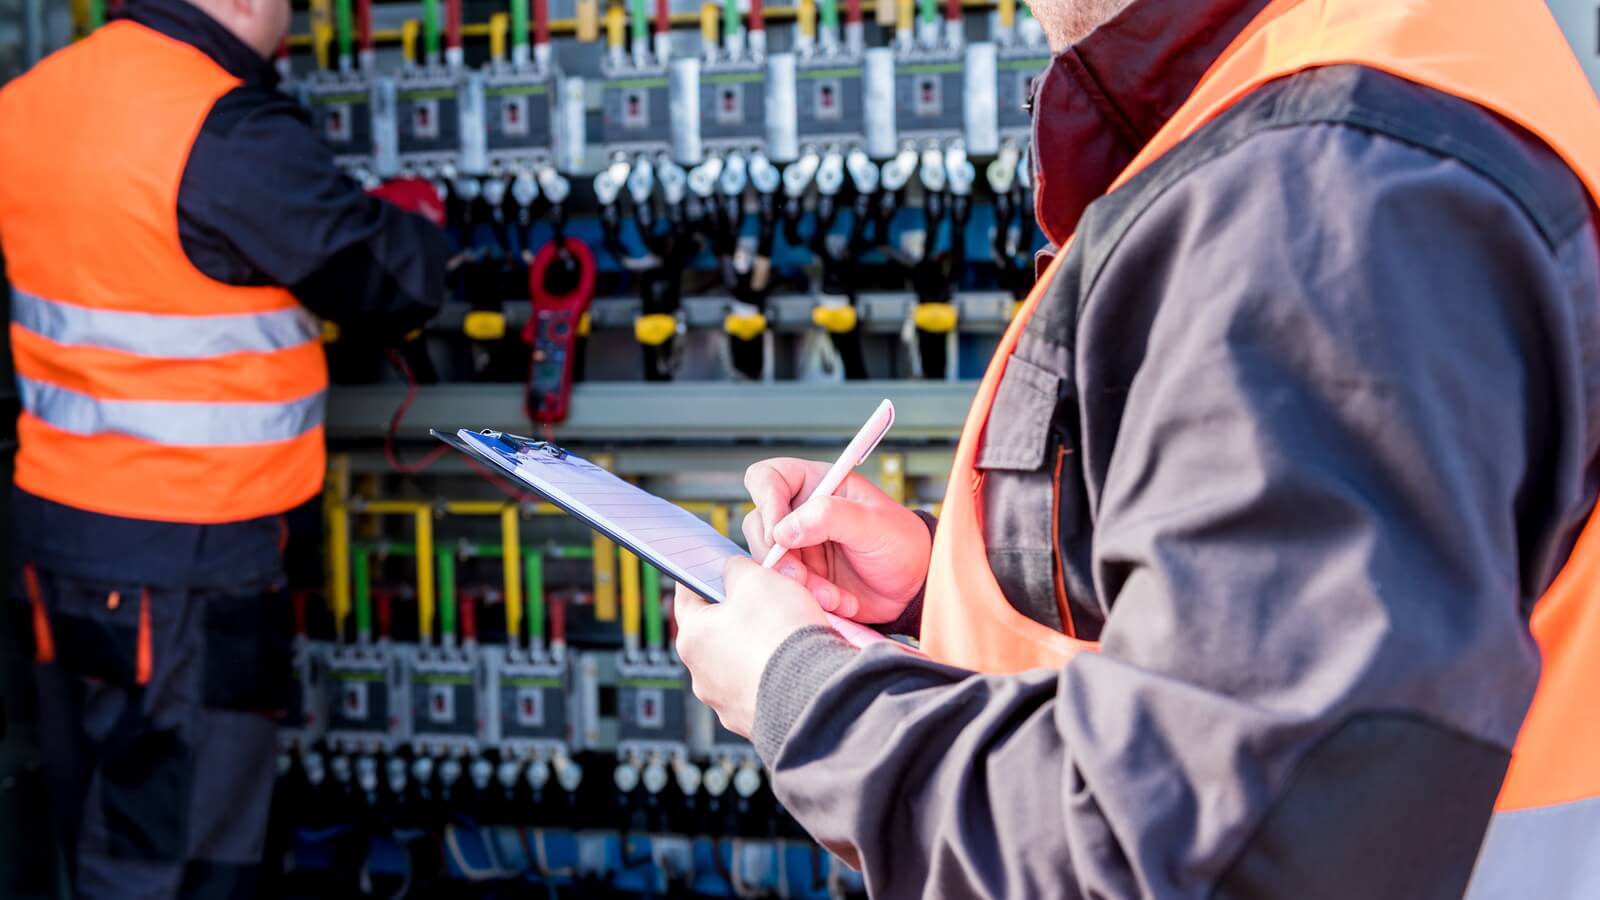 asesor instalaciones electricas servicio asesoramiento1